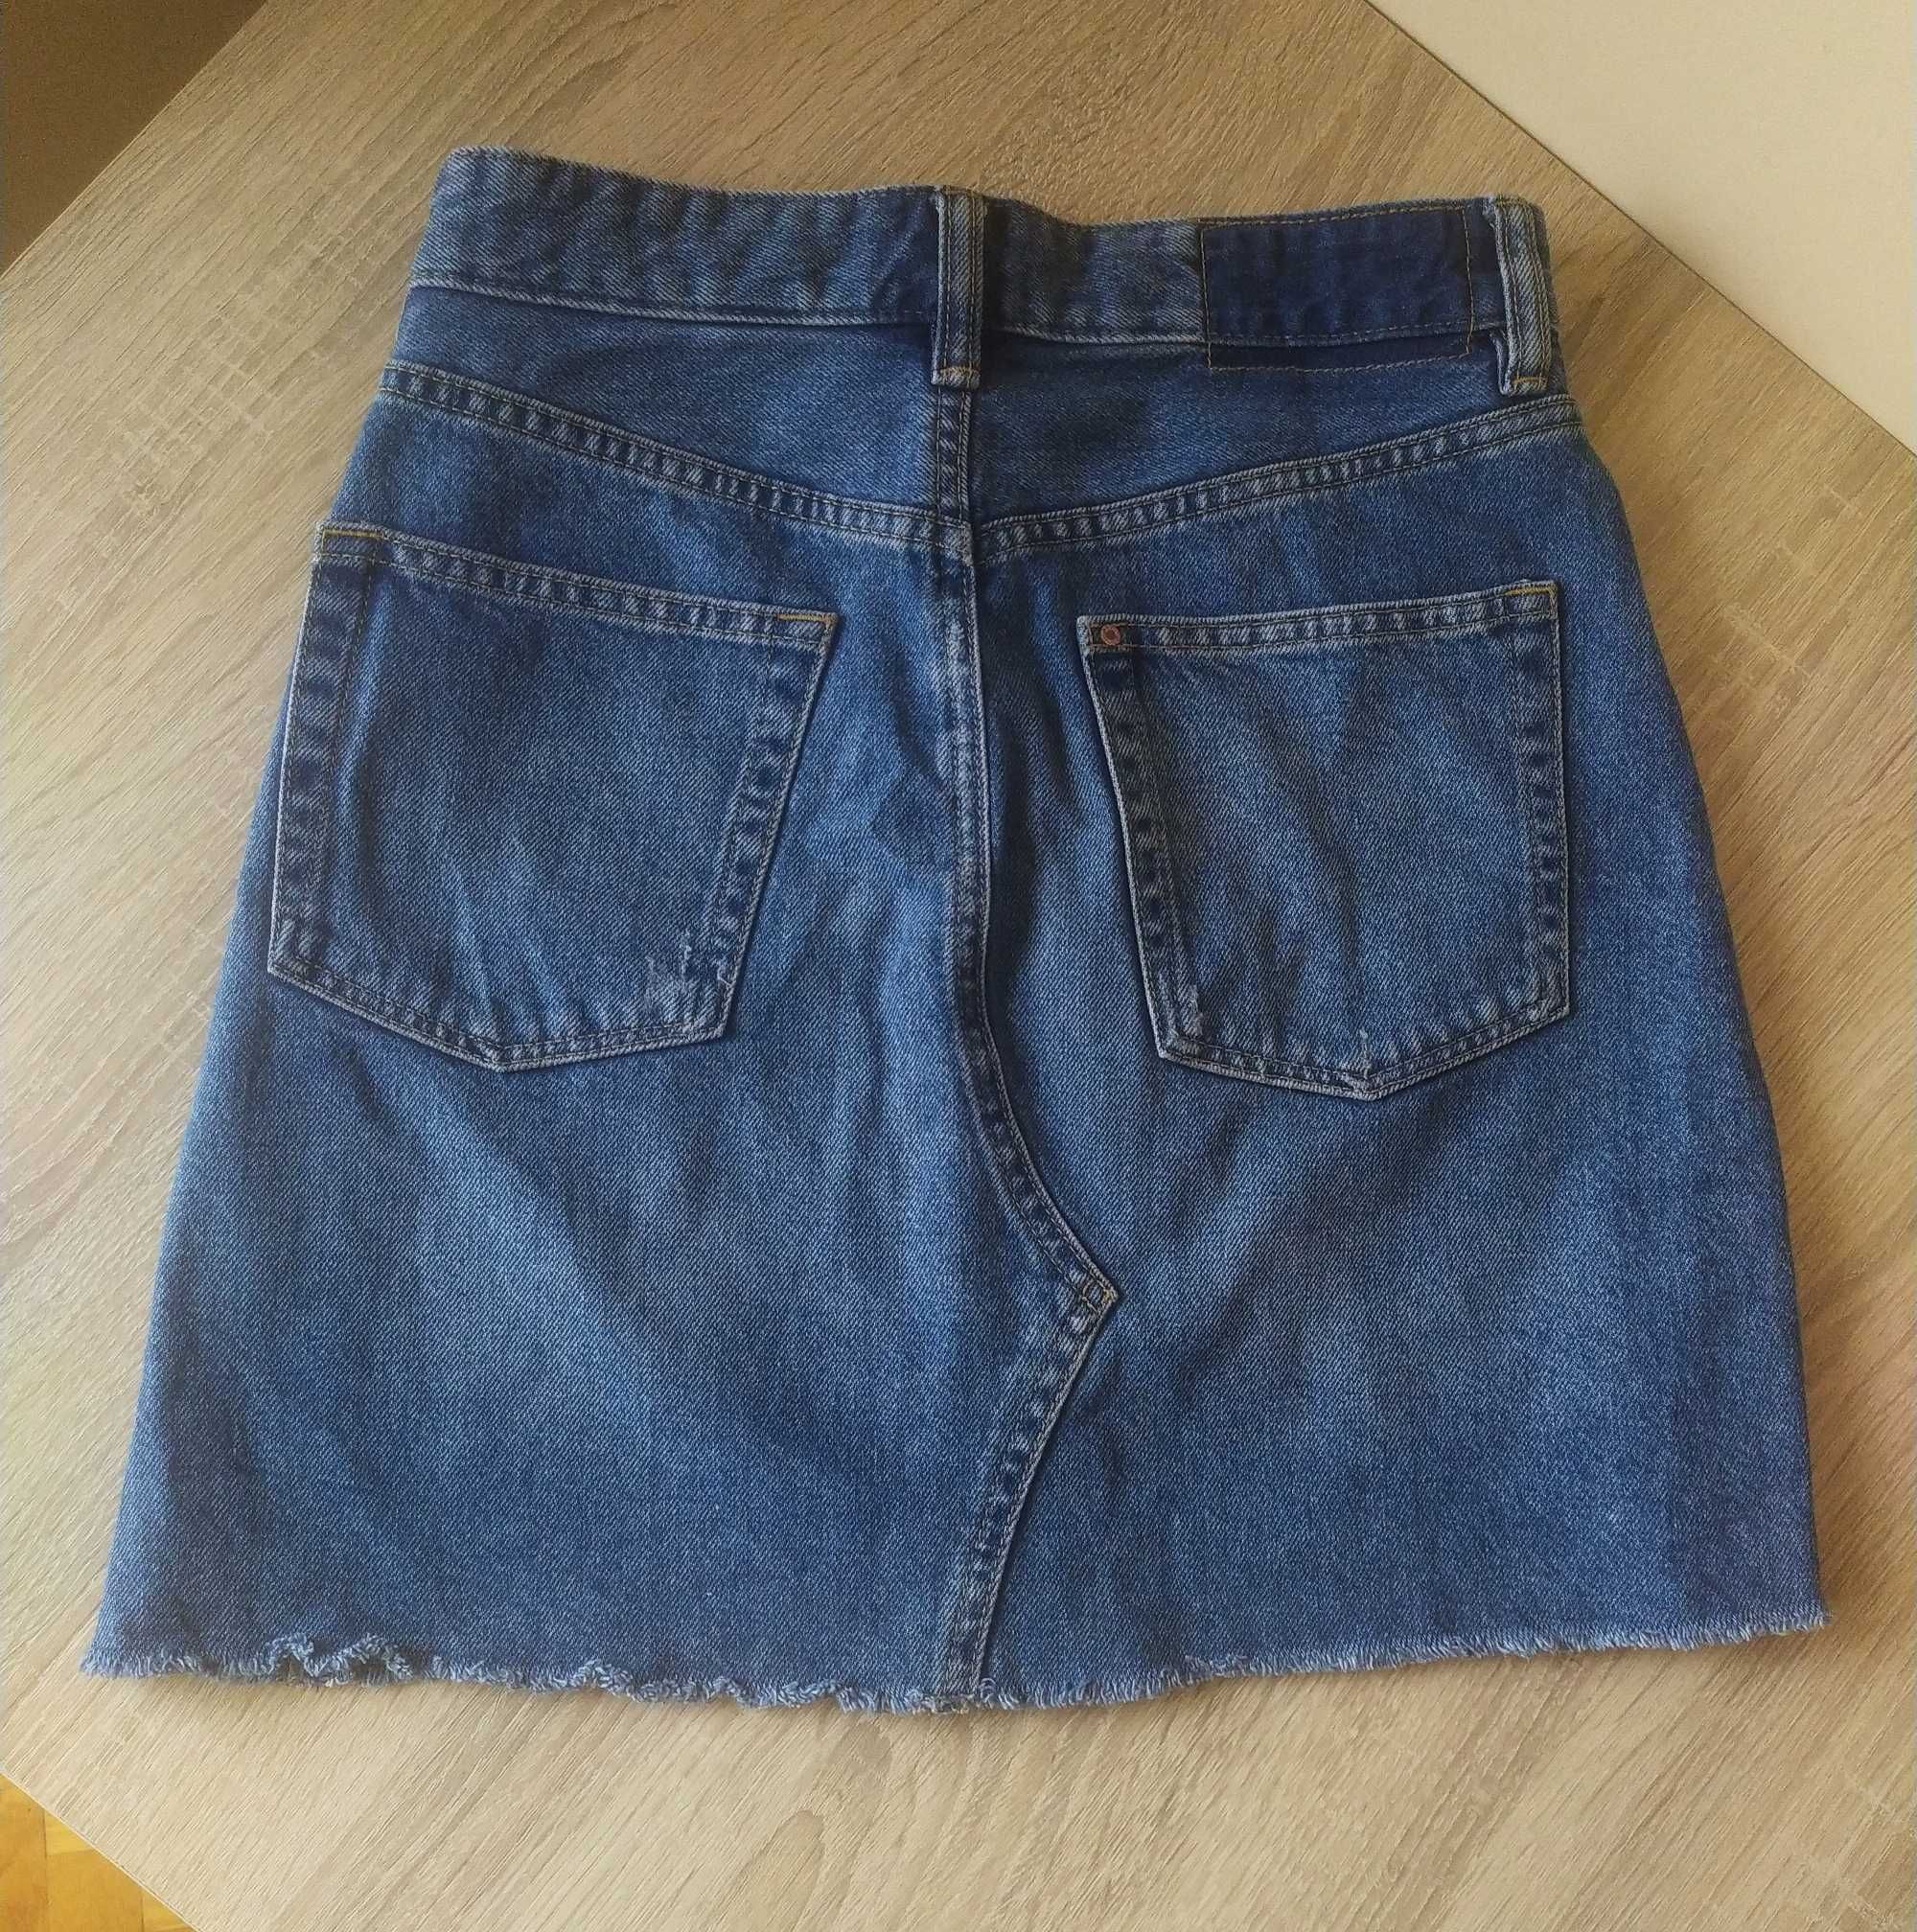 Niebieska jeansowa spódnica mini z kieszeniami, 100 % cotton,H&M r.XS